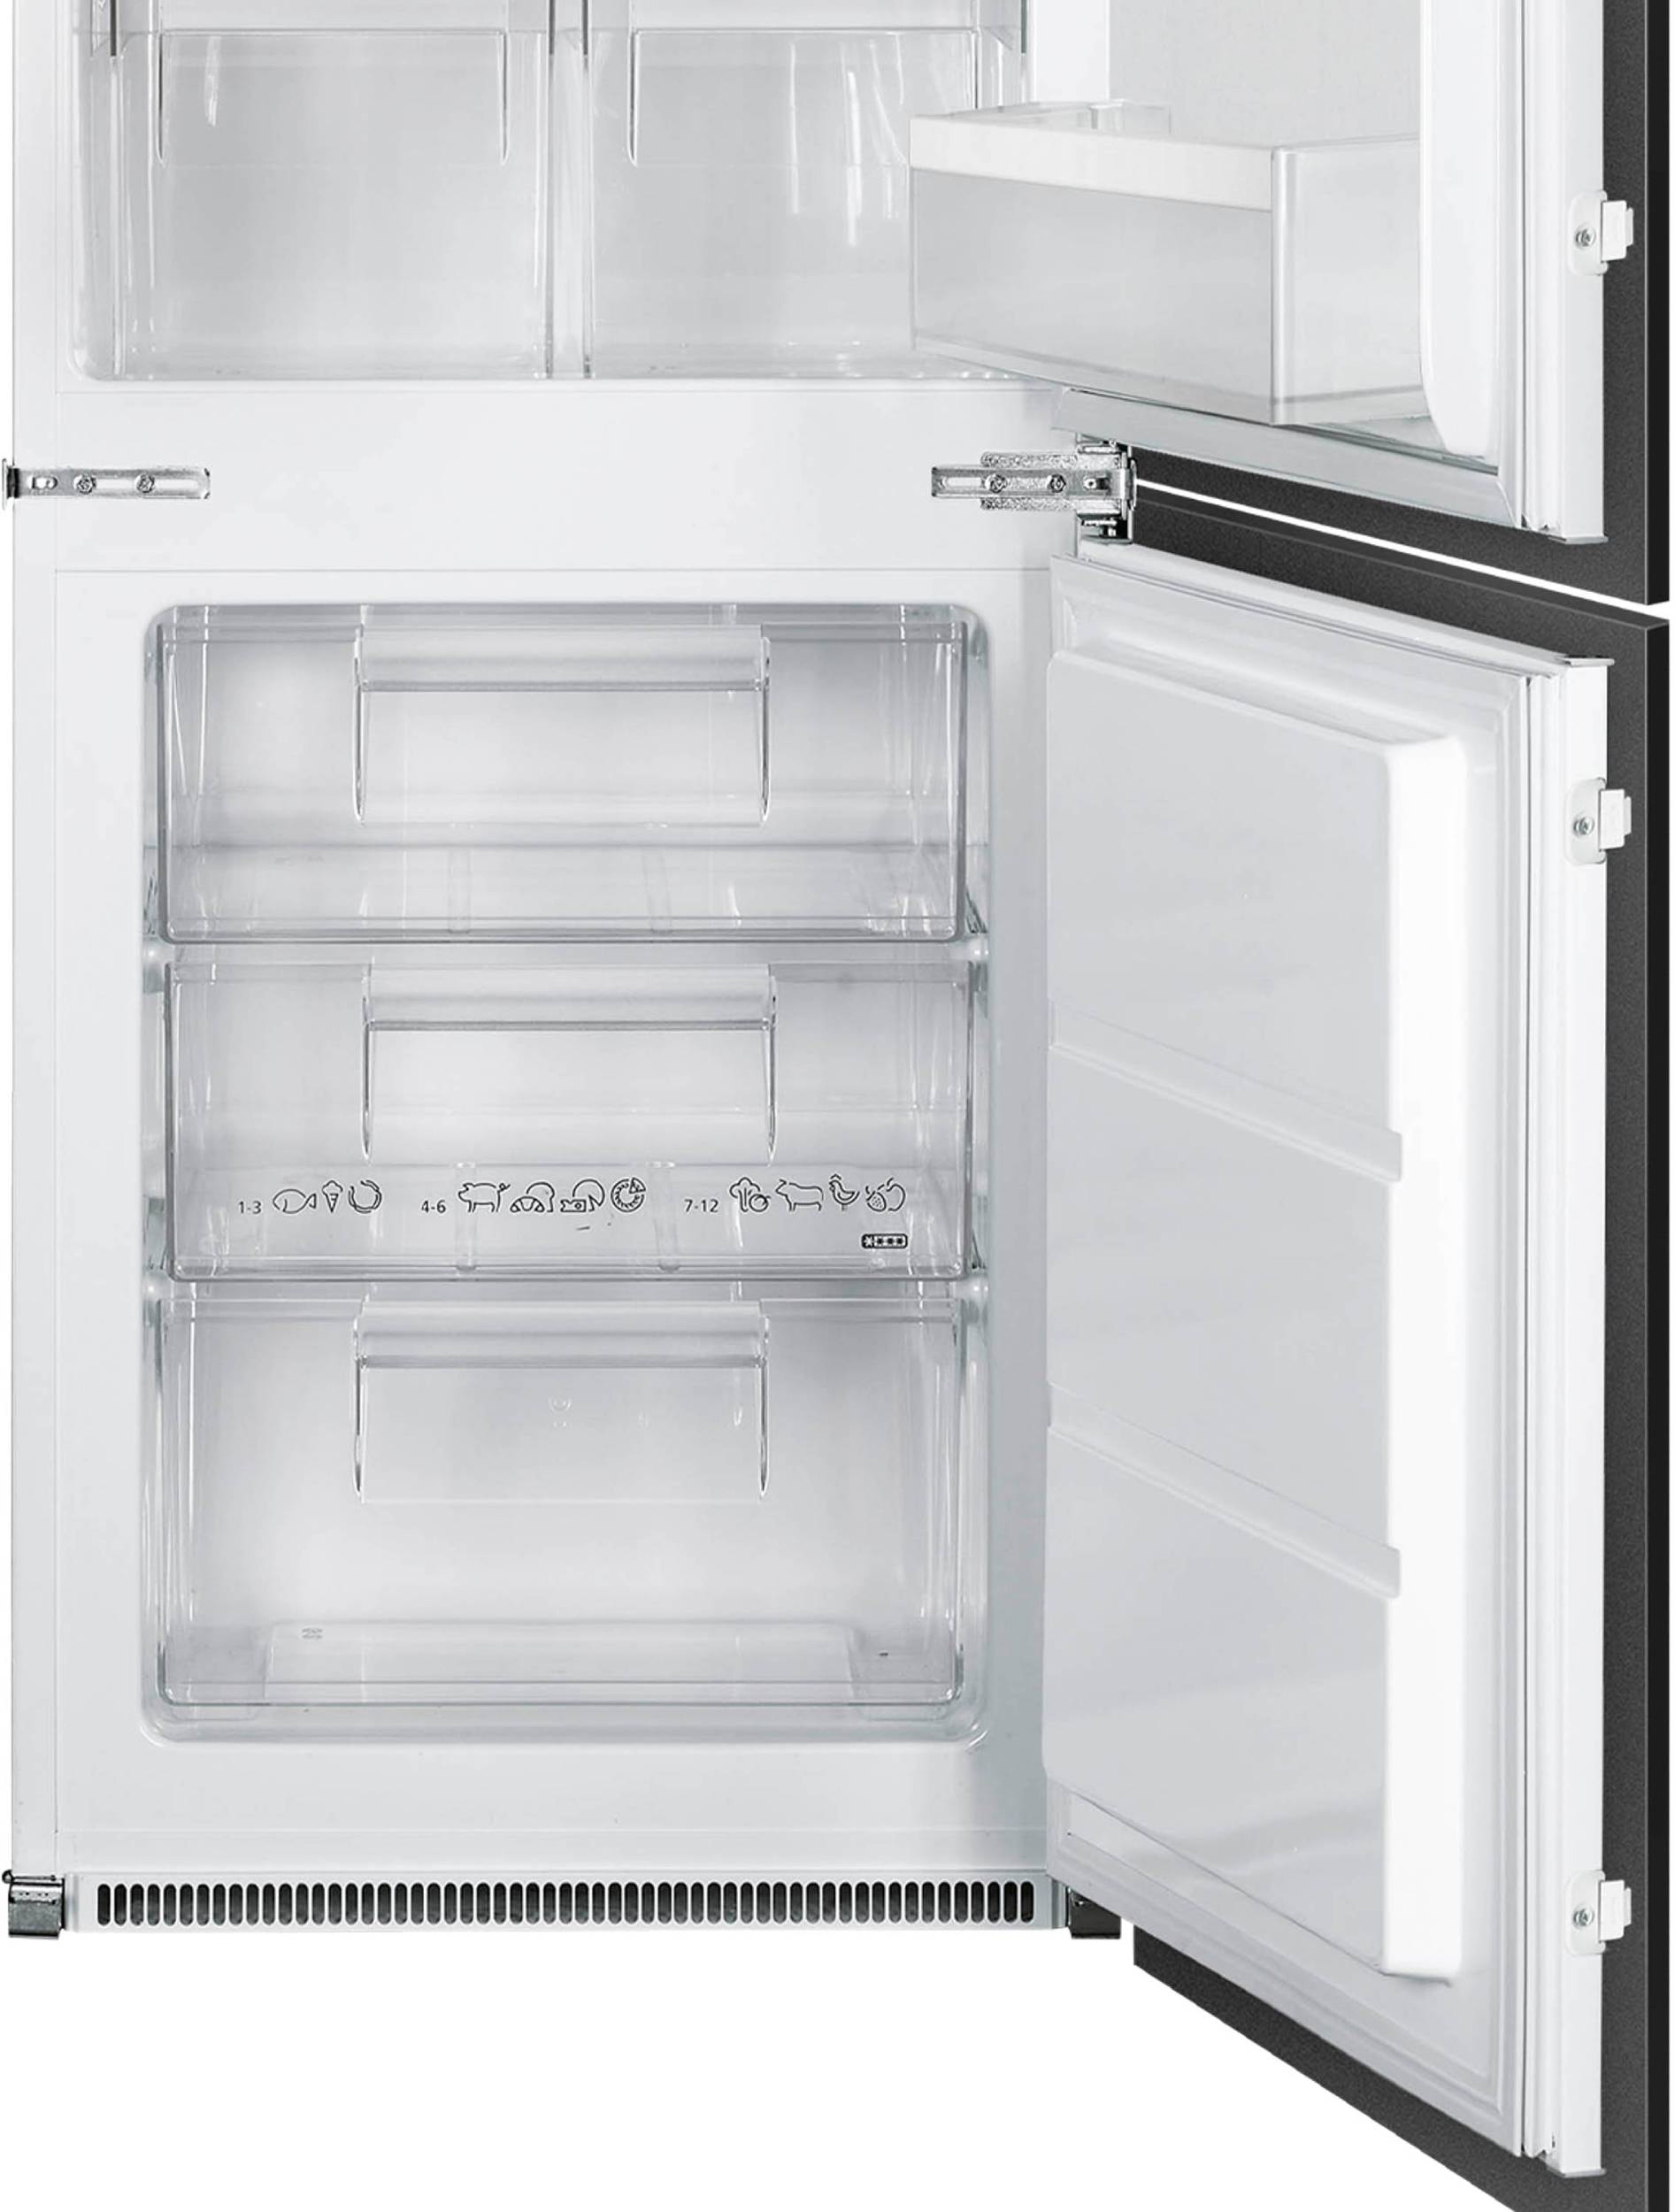 Réfrigérateur encastrable combiné froid brassé 178 cm